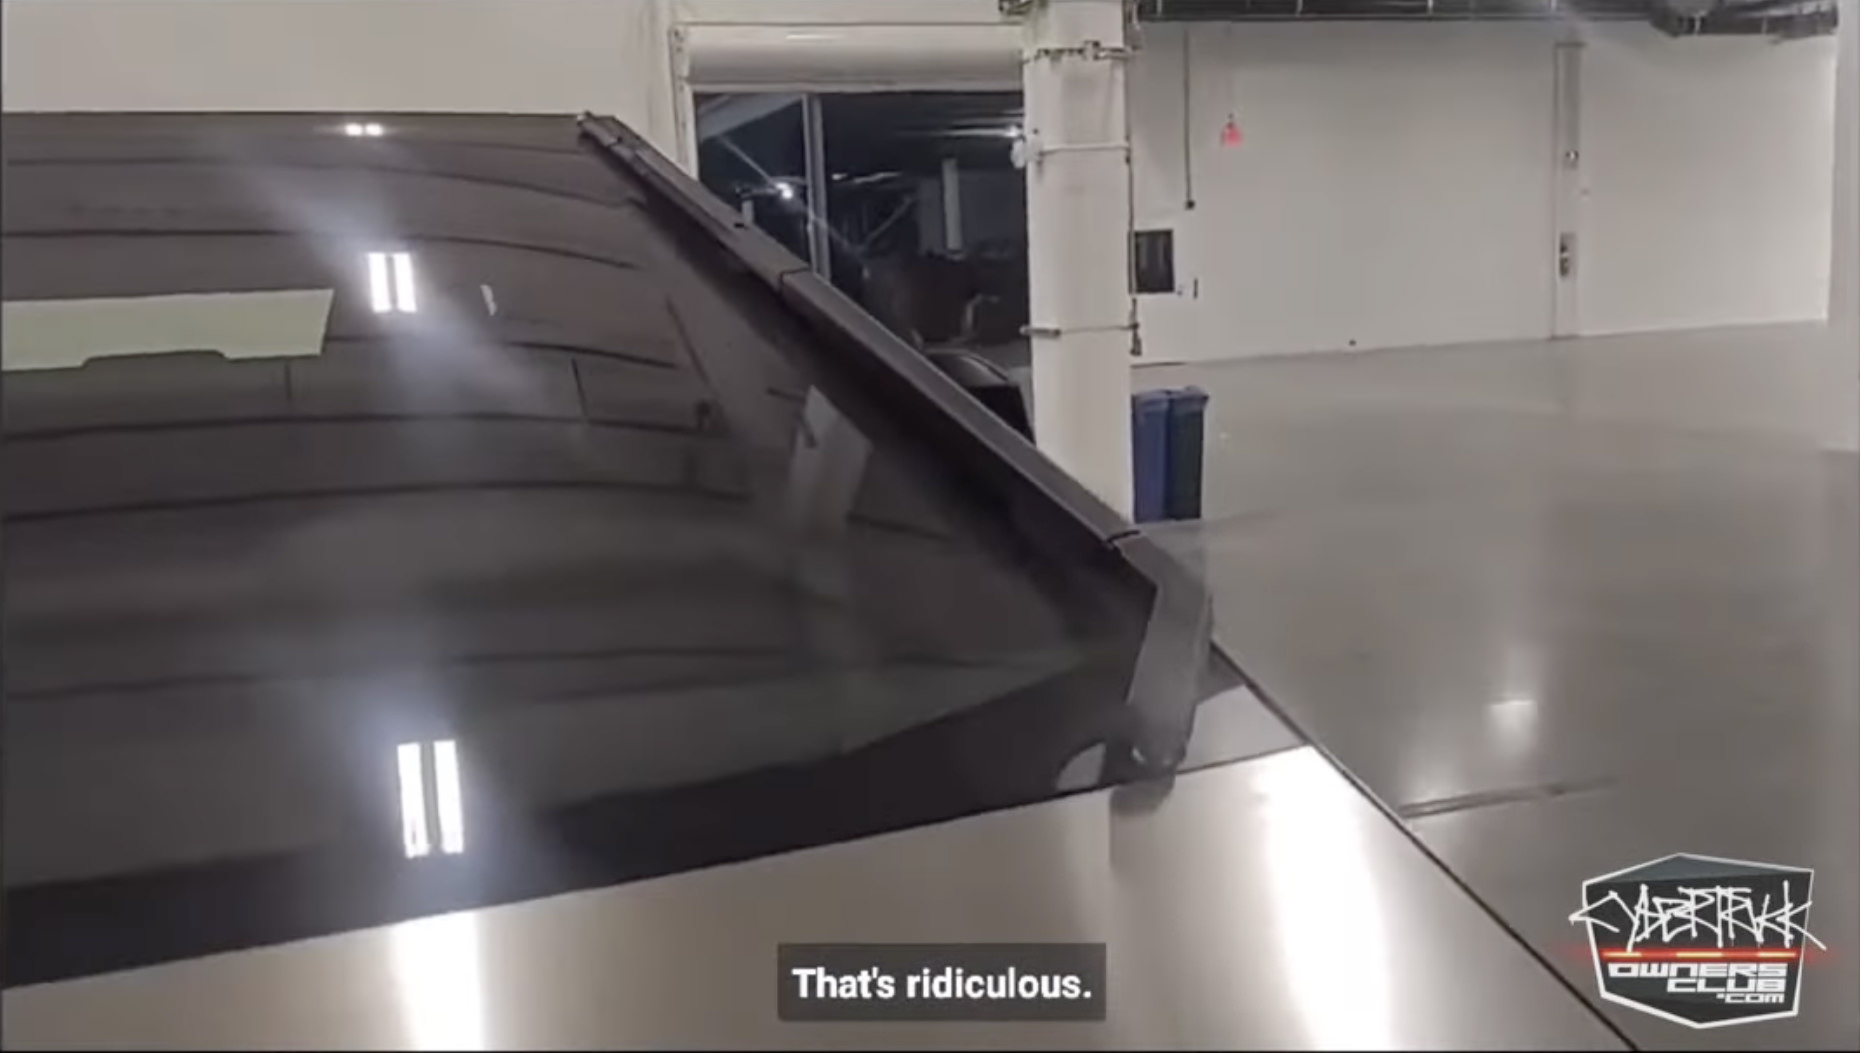 شیشه جلویی خودرو سایبرتراک تسلا / Tesla Cybertruck